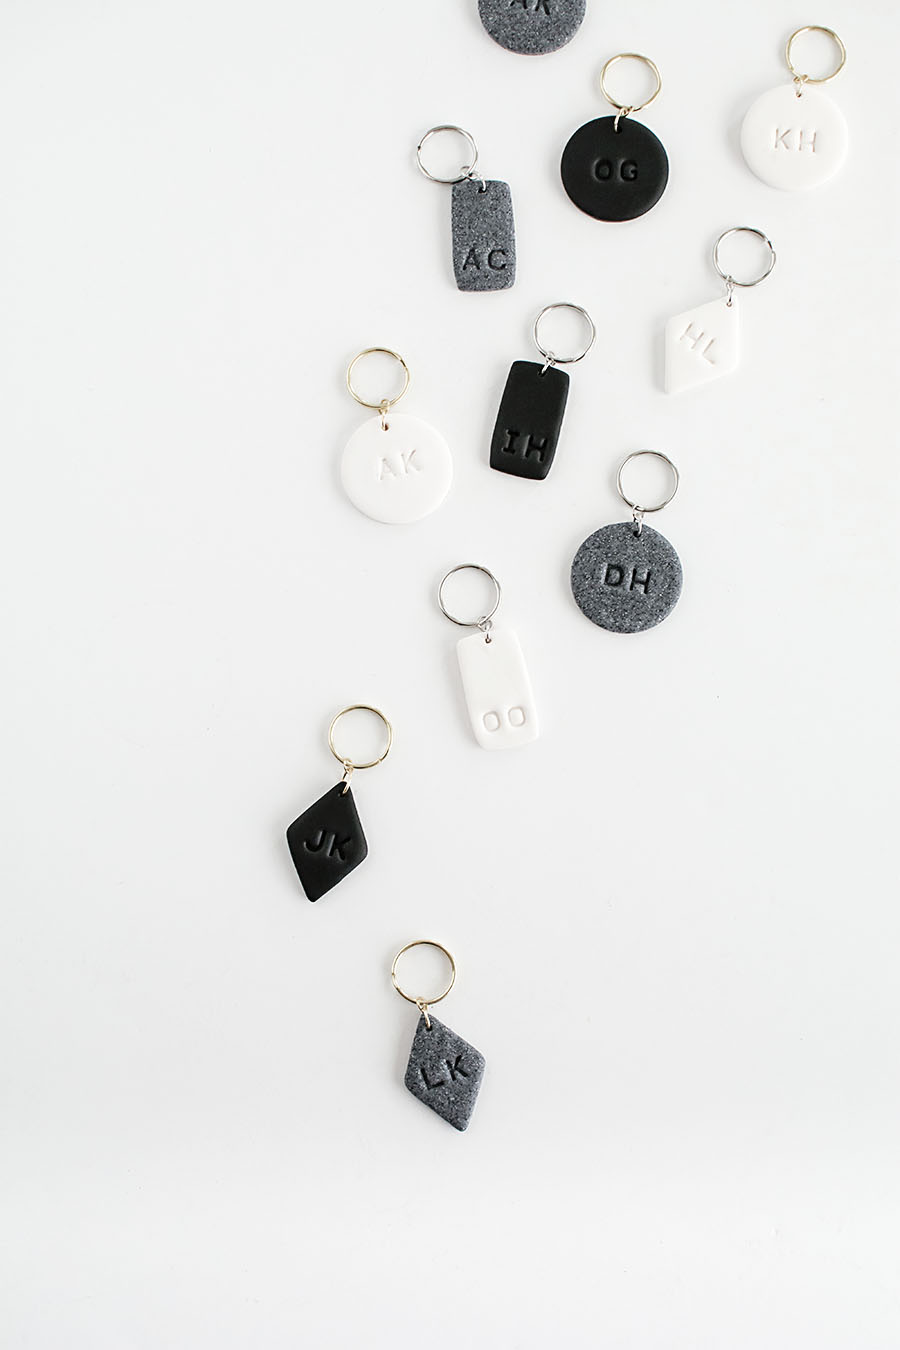 DIY- Monogram Clay Keychains